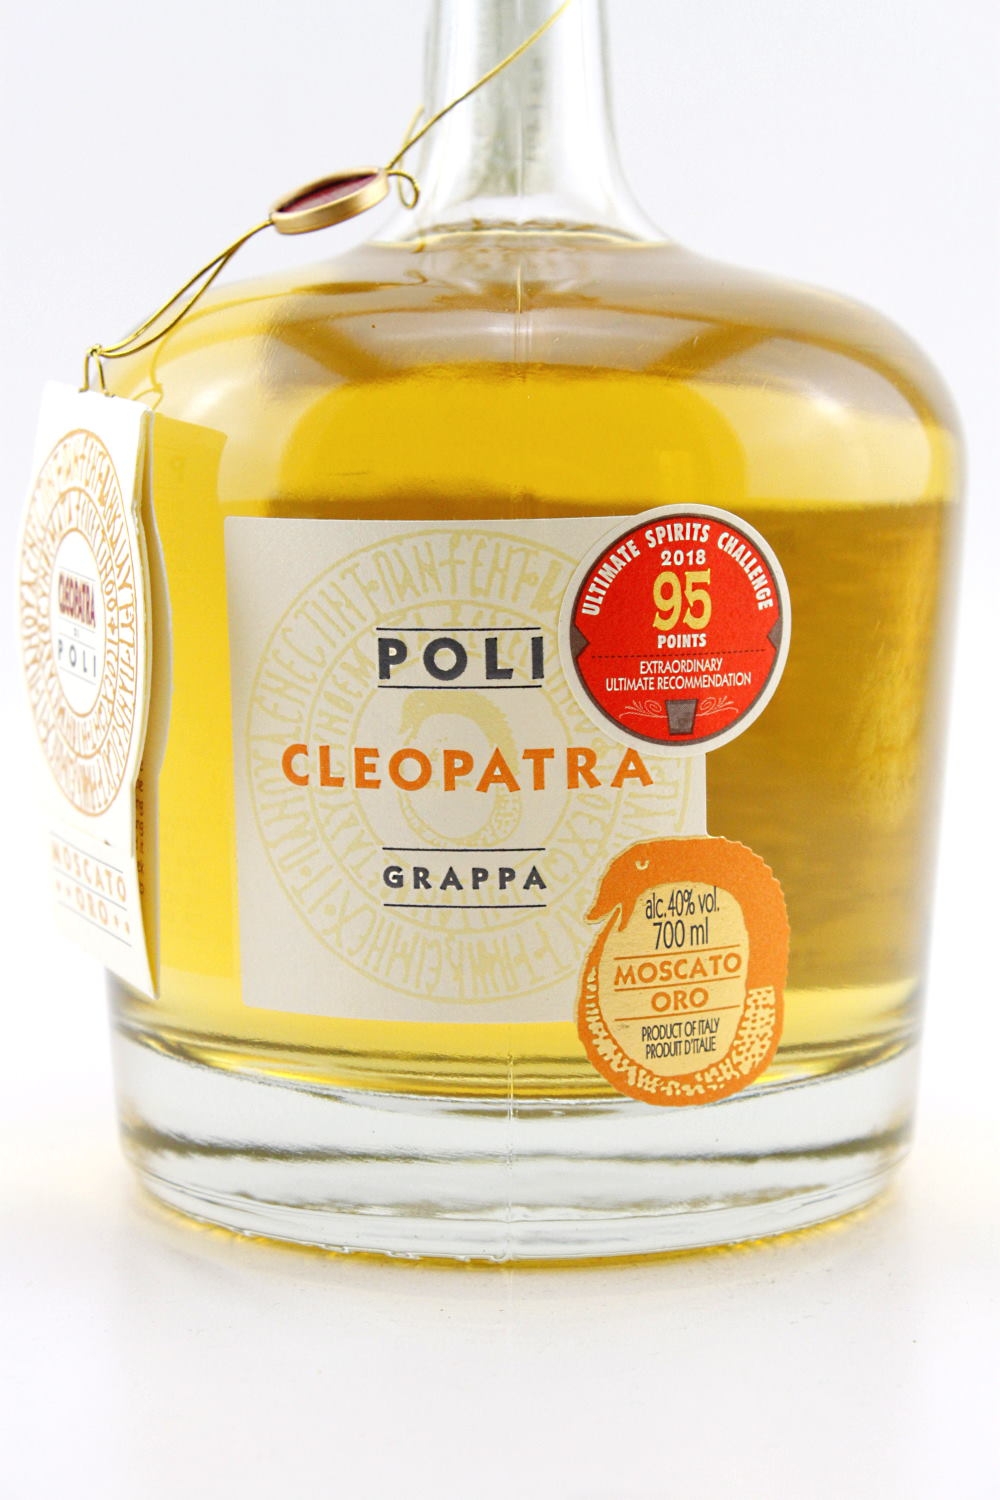 Grappa 40% mit Moscato Poli Oro Dose vol. Cleopatra Brennerei